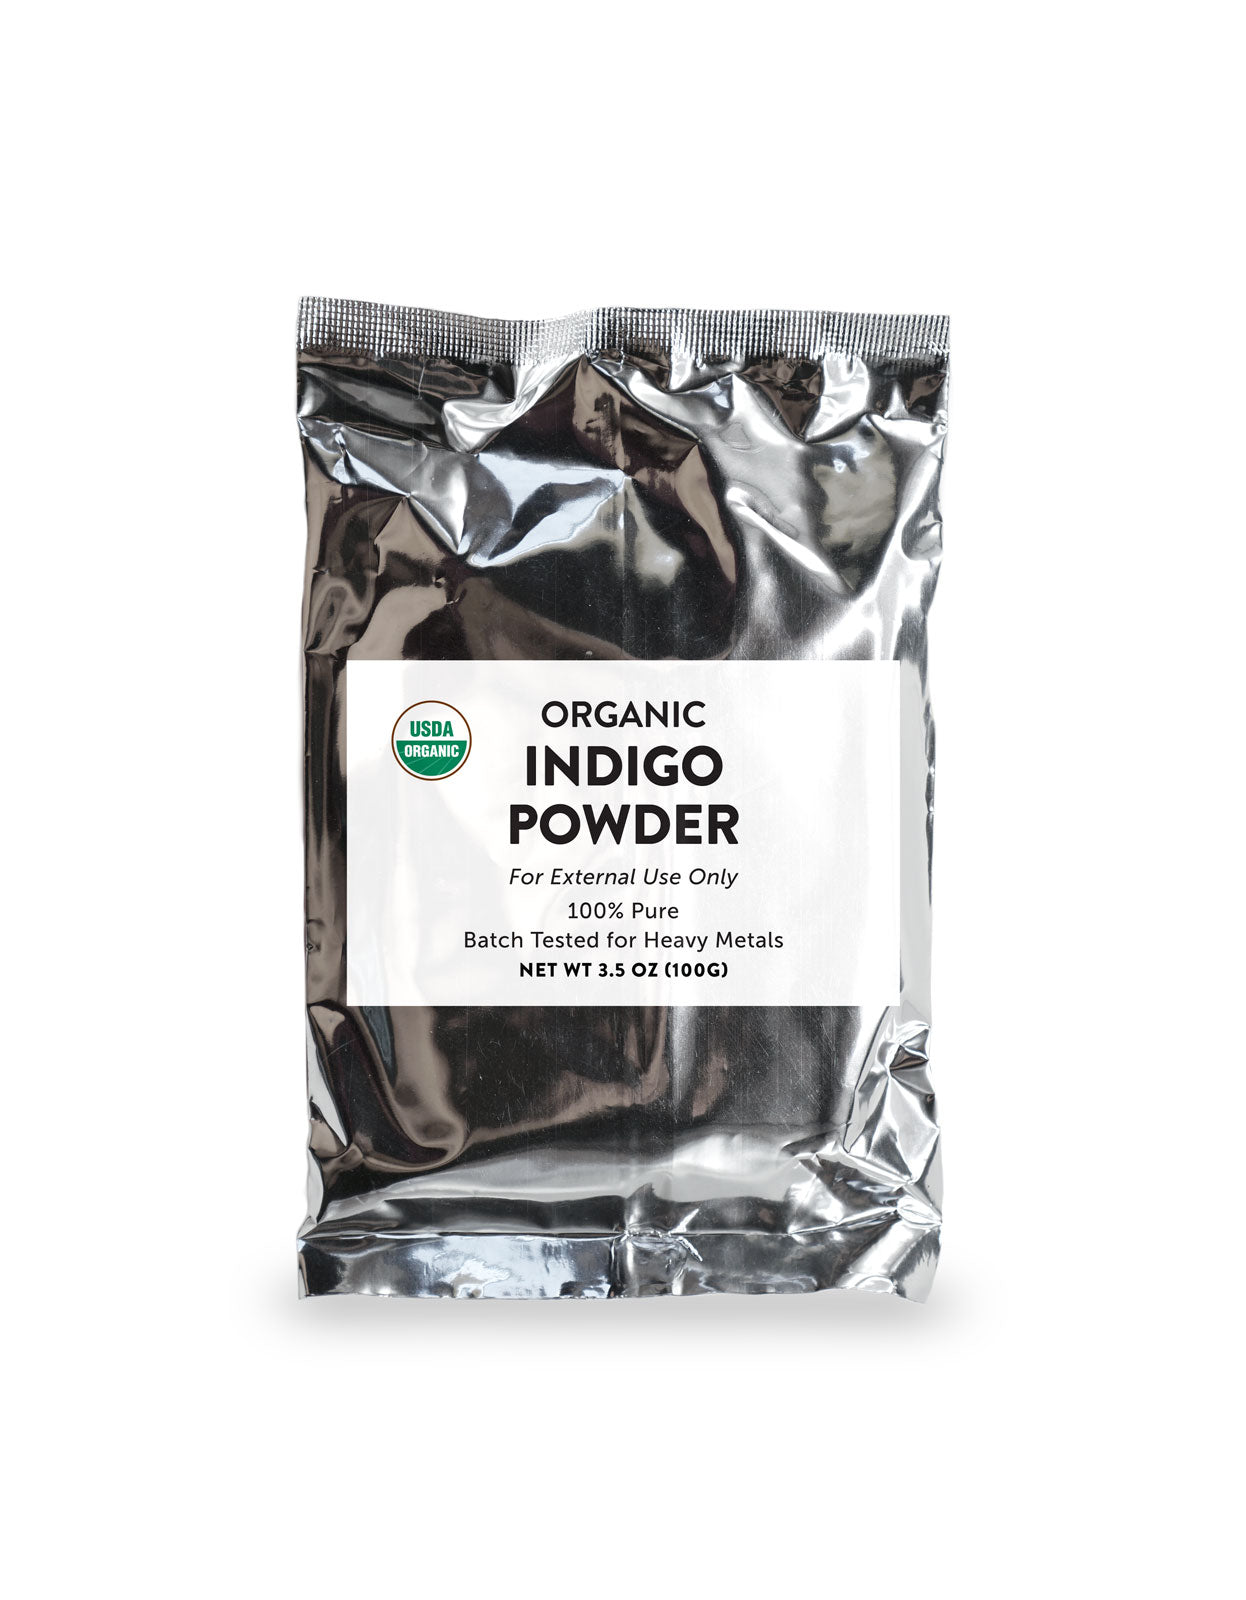 Indigo Powder (Indigofera Tinctoria) from El Salvador - organic